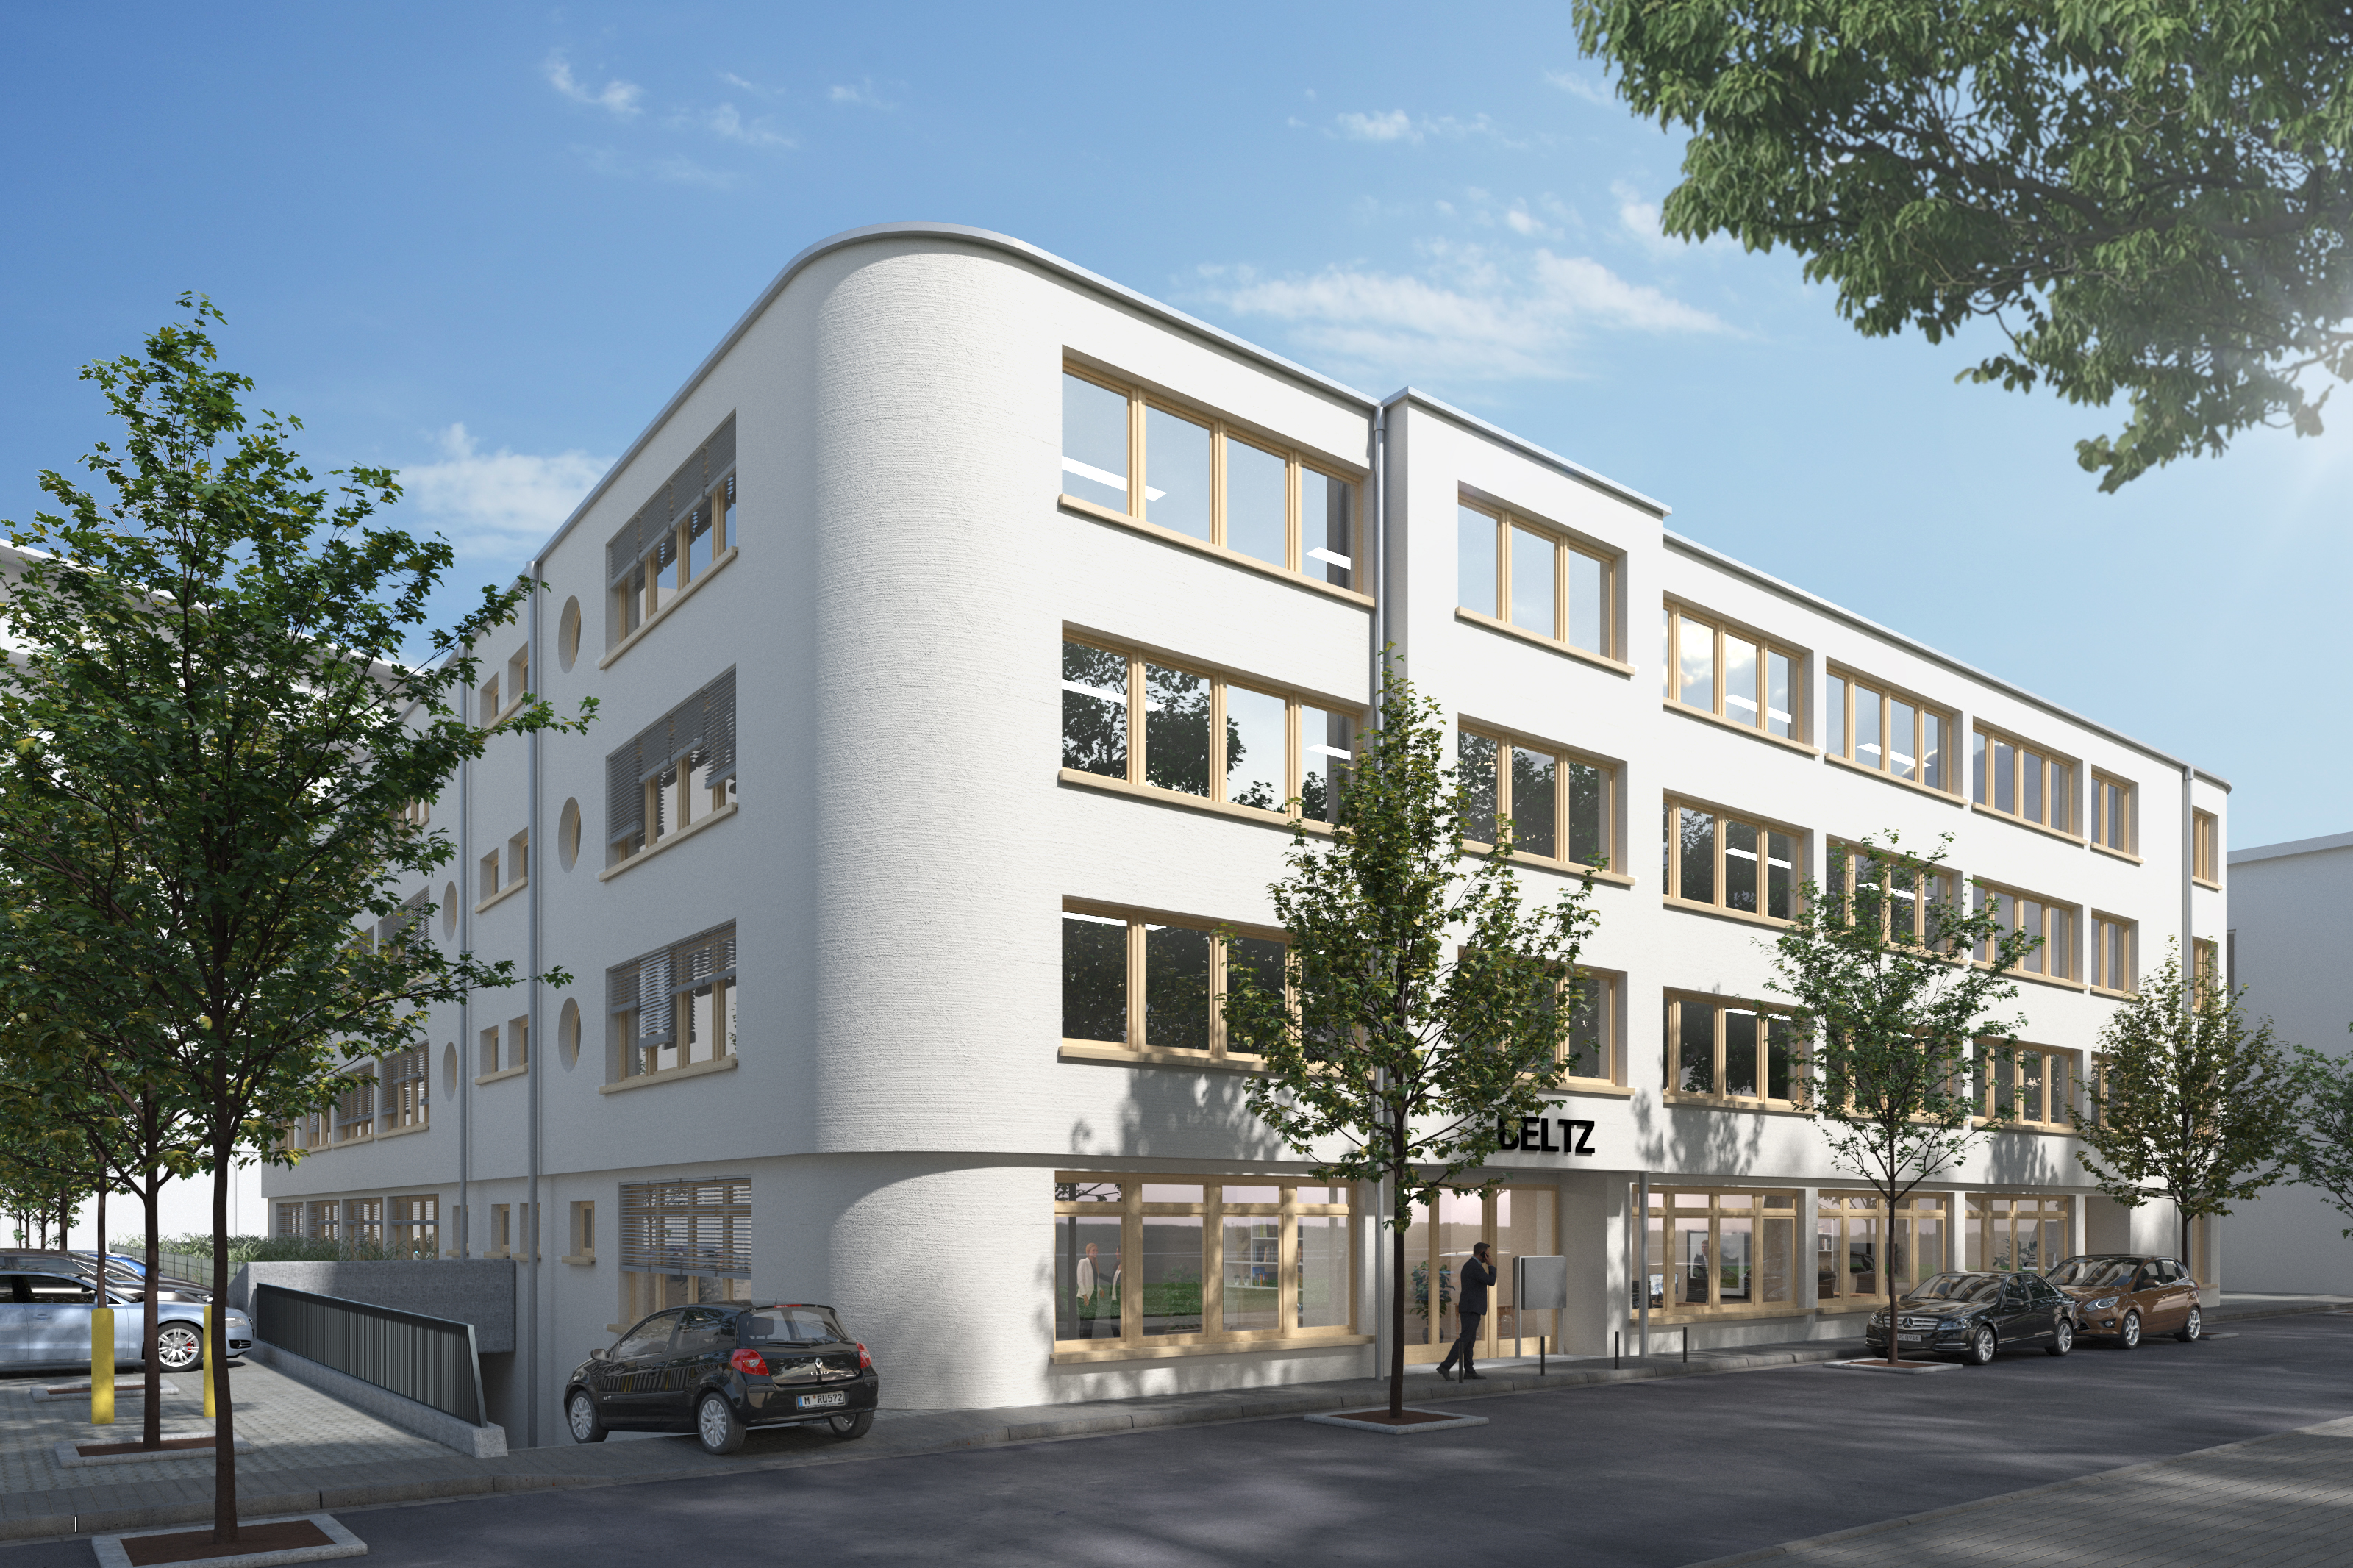 Architektonische Darstellung der Planung des neuen Verlagsgebäudes von Beltz